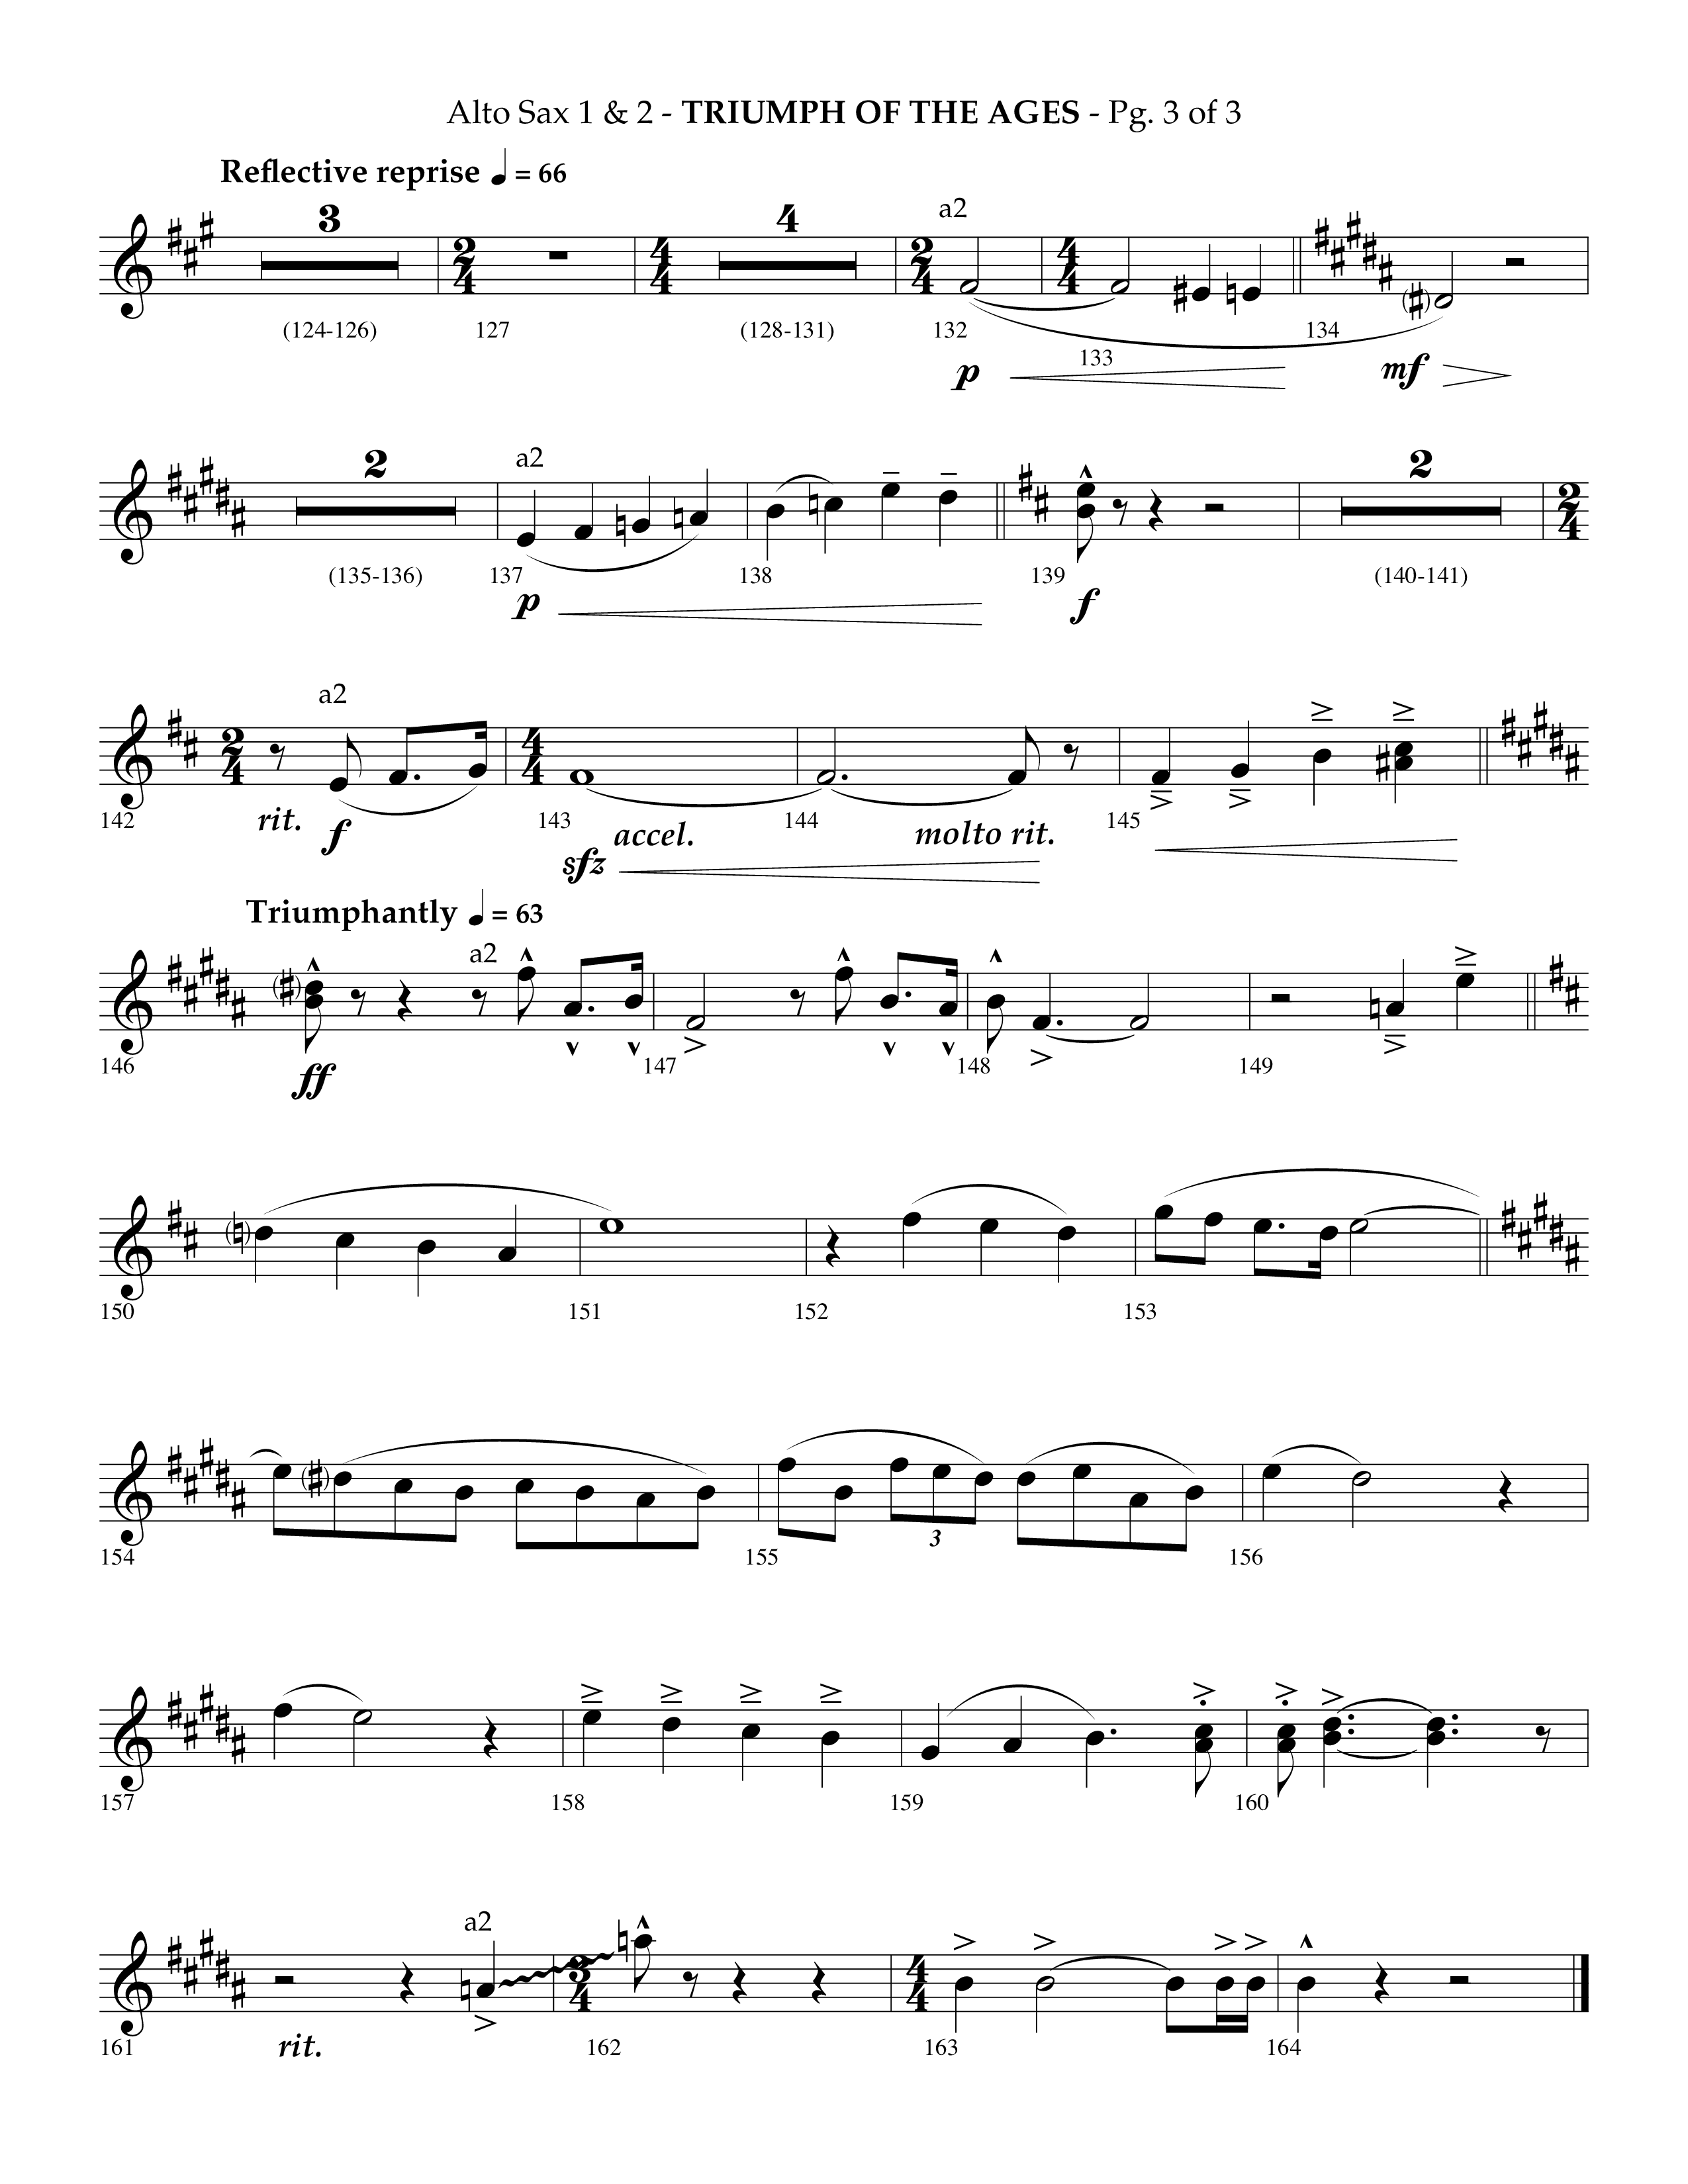 Triumph Of The Ages (Choral Anthem SATB) Alto Sax 1/2 (Lifeway Choral / Arr. Phillip Keveren)